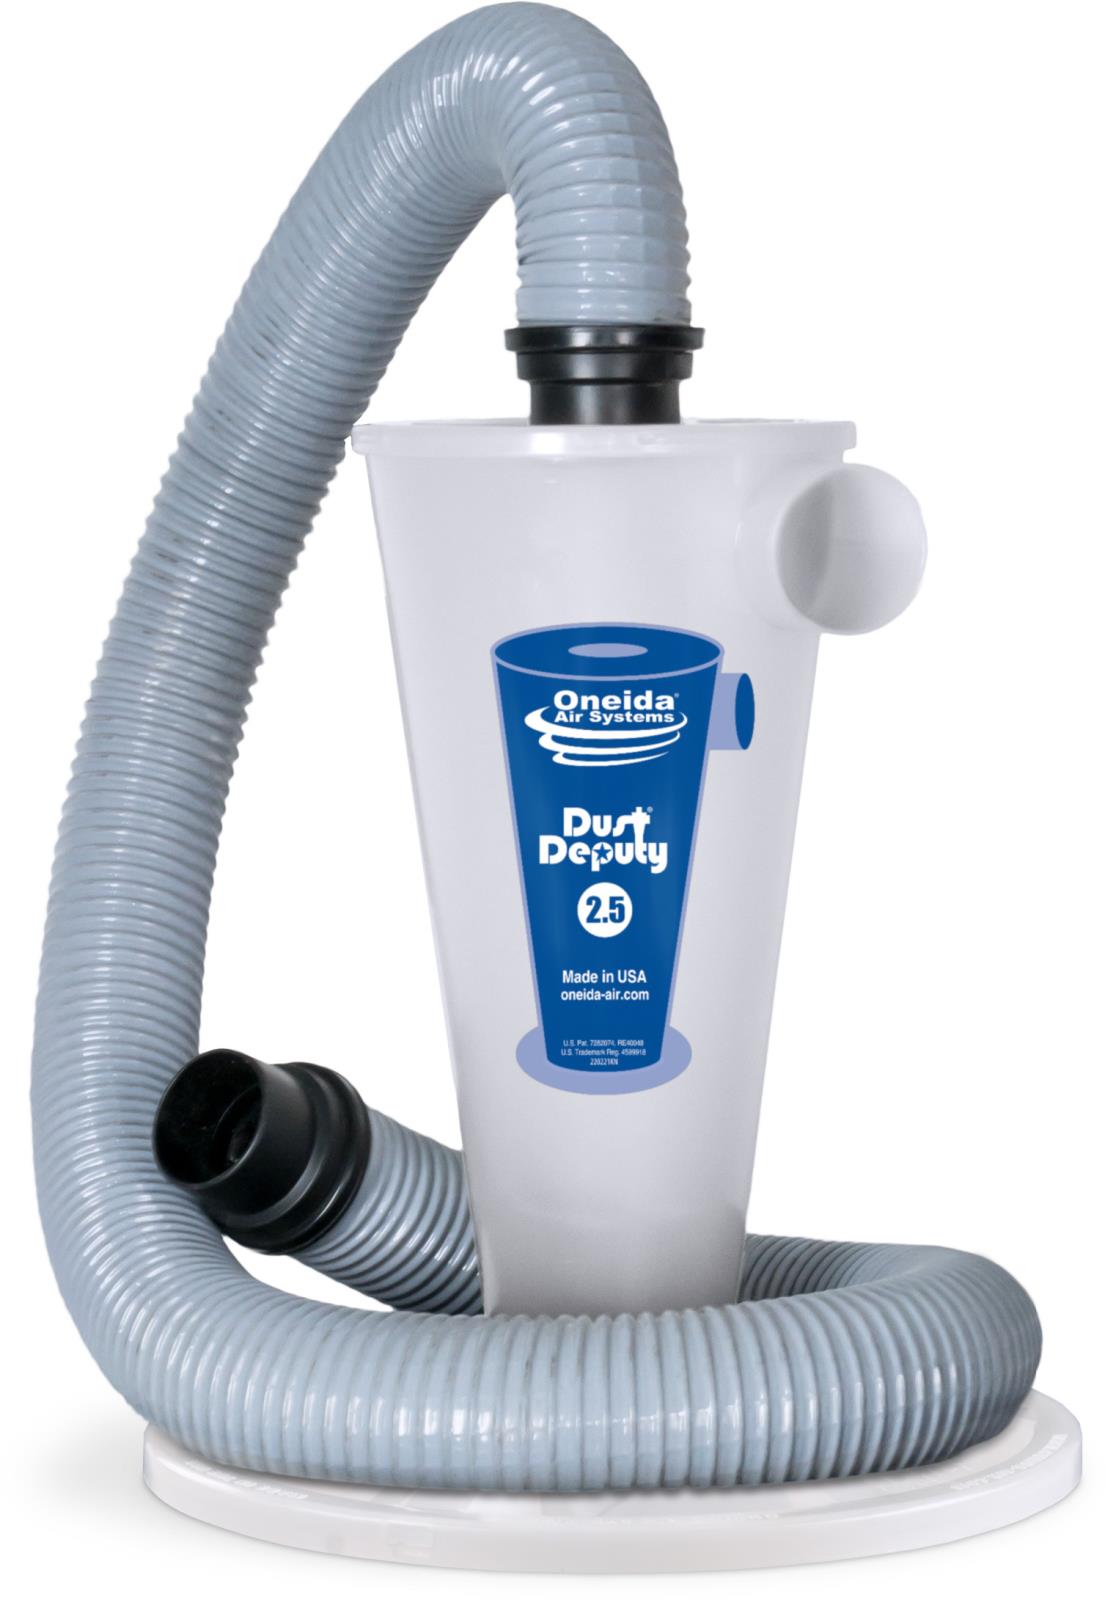 Dust Daddy - Multipurpose Vacuum Attachment – raksack